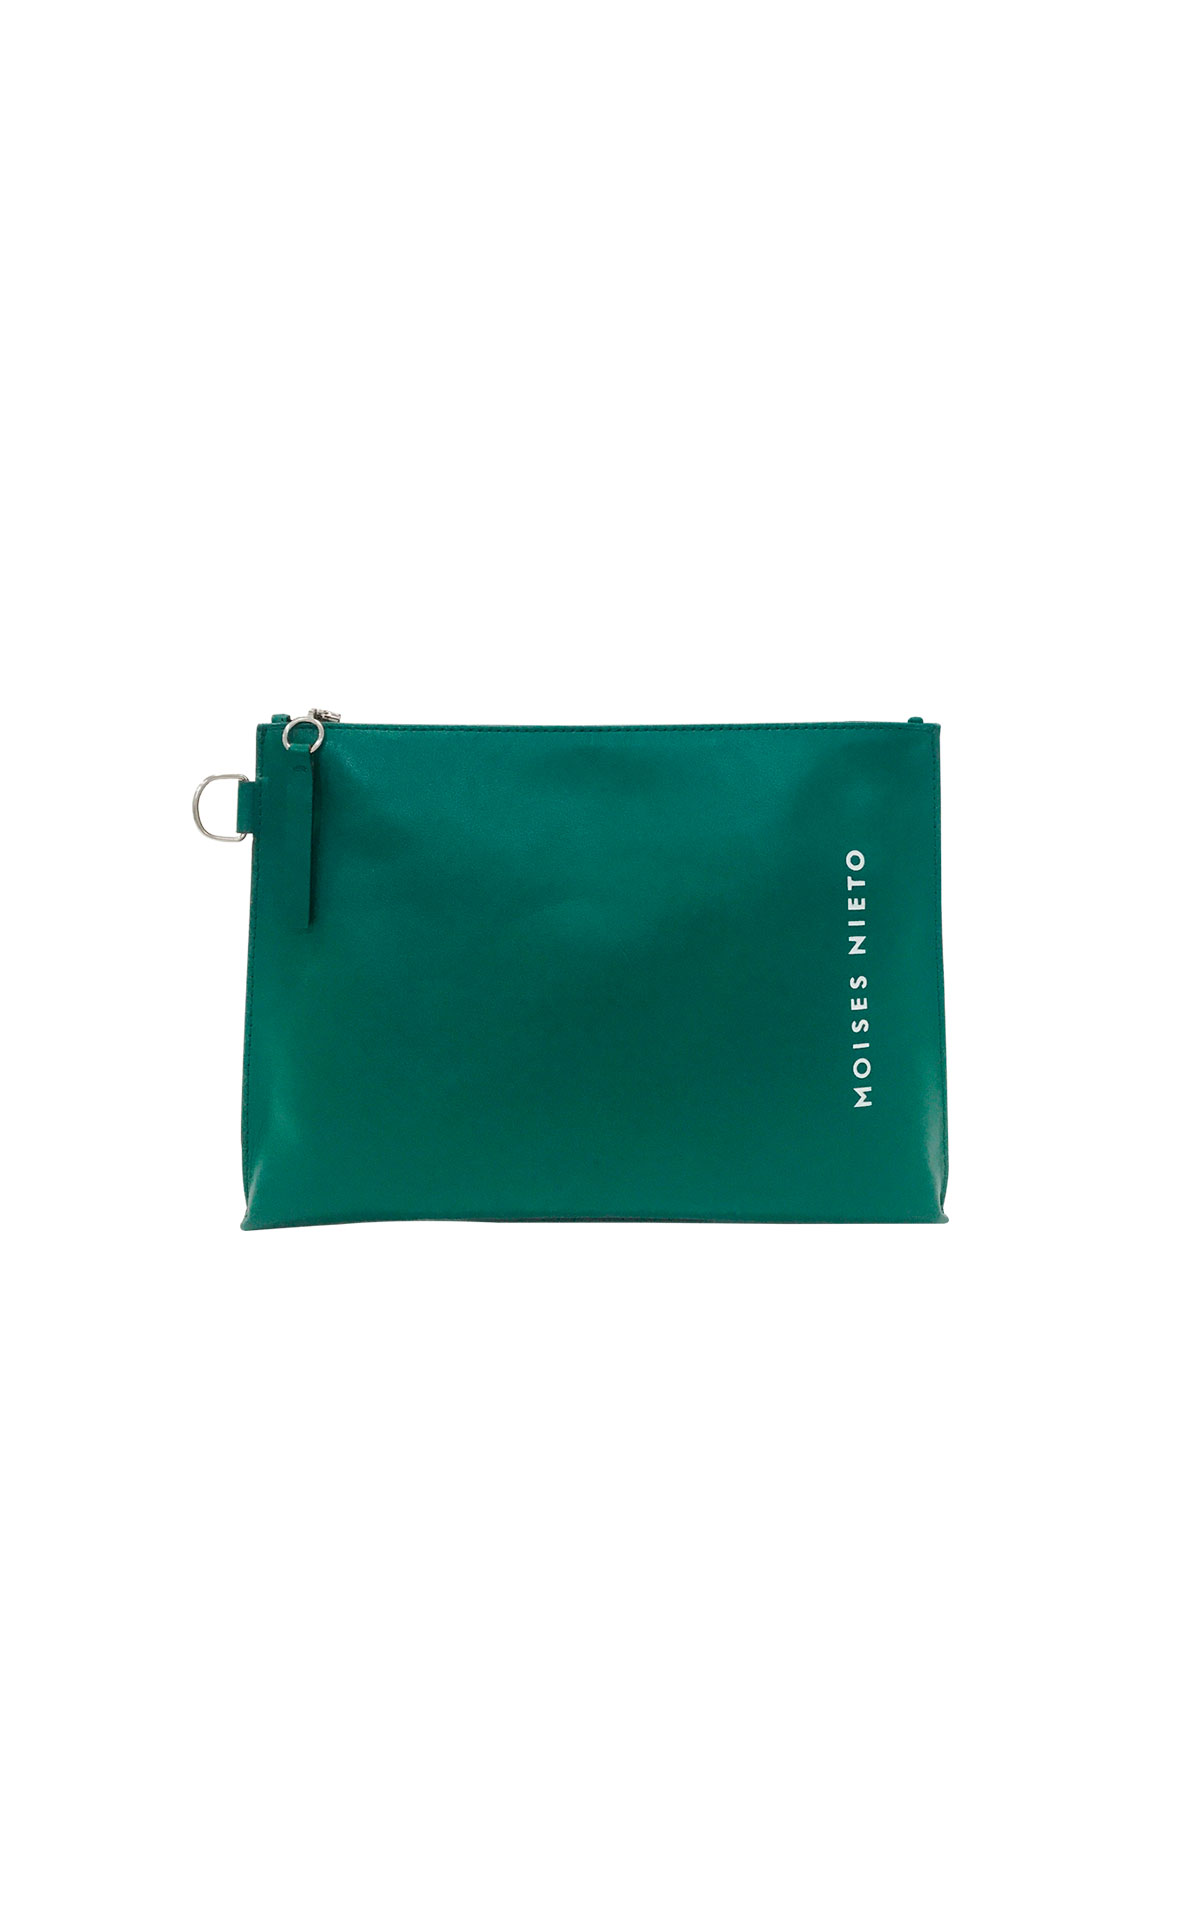 Green Moises Nieto handbag